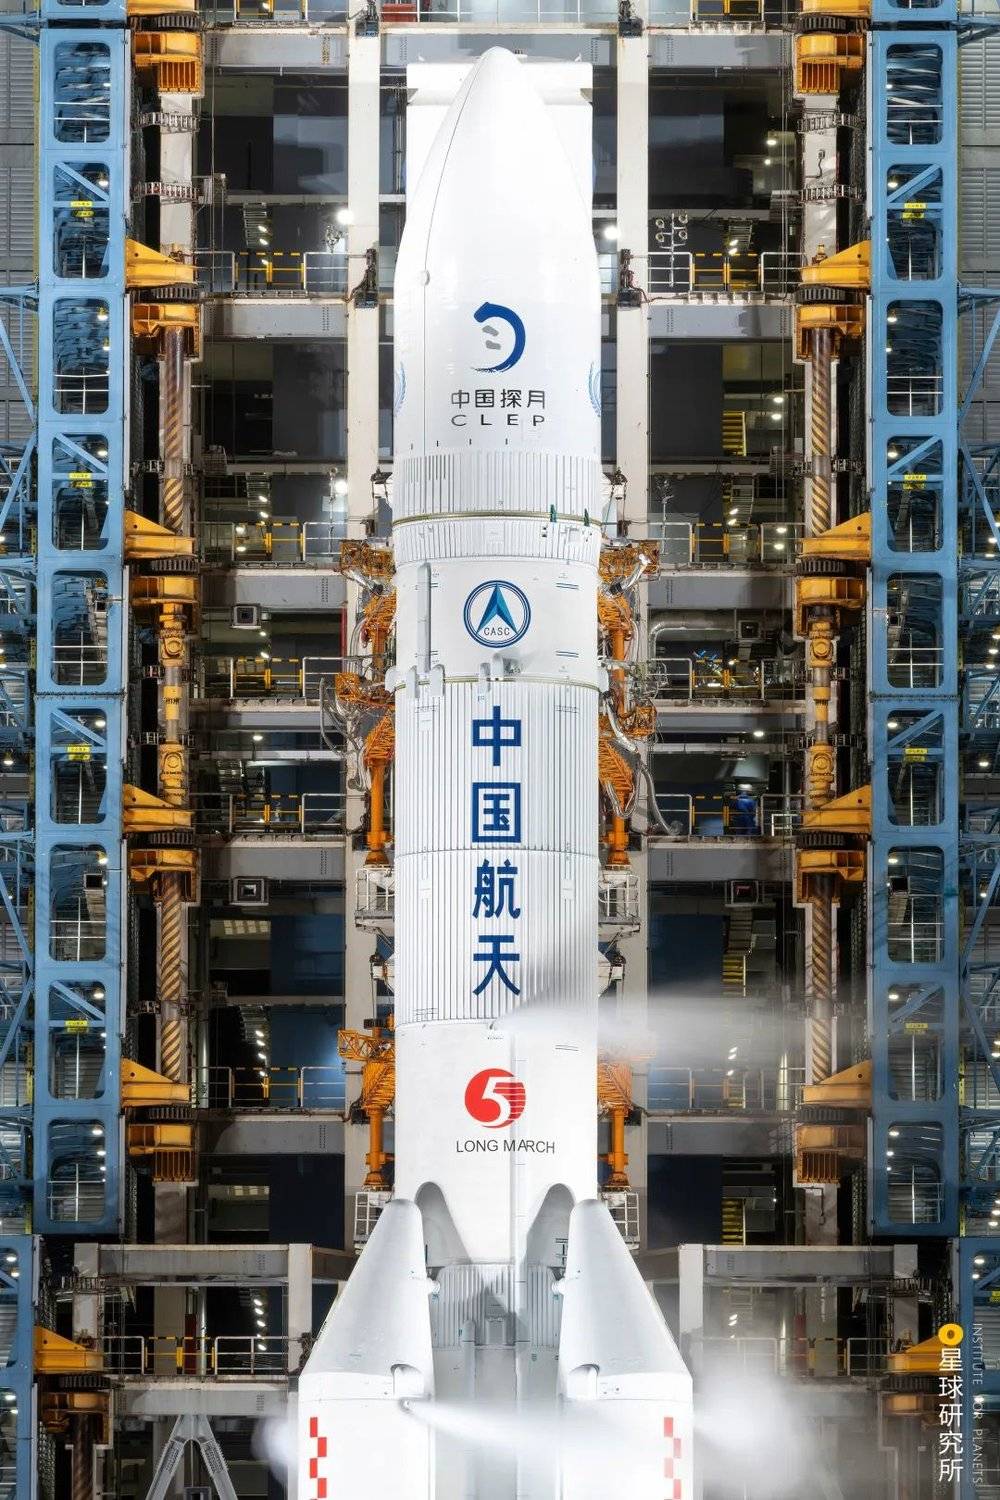 （2020年11月24日，嫦娥五号任务发射前的长征五号，由于尺寸硕大，人送外号“胖五”，摄影师@陈肖&肖海林）